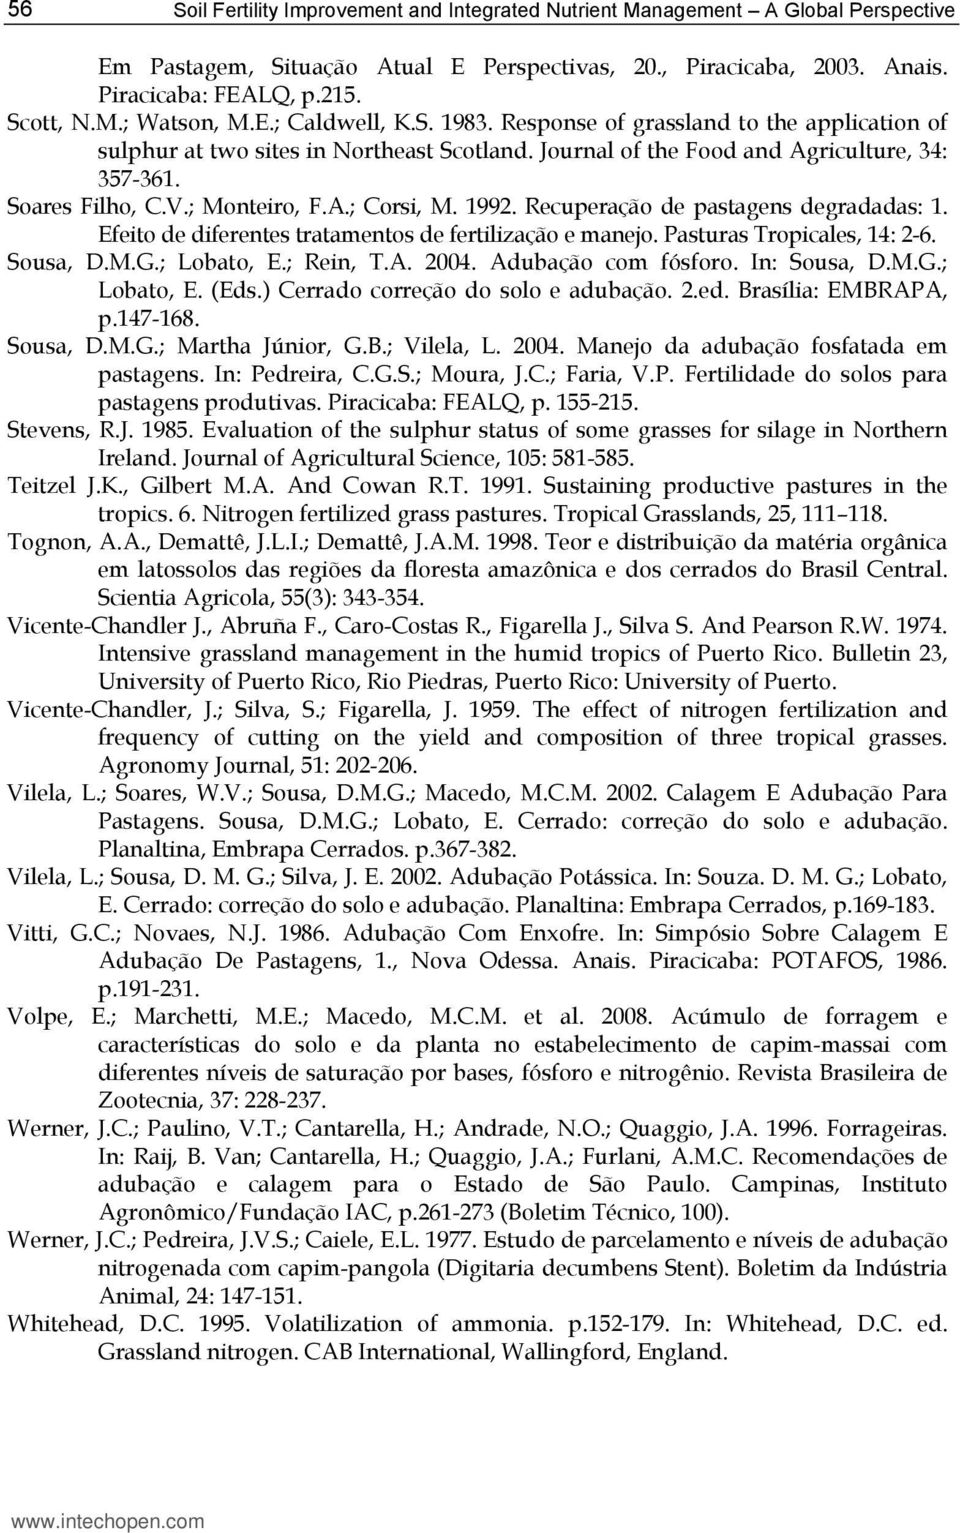 1992. Recuperação de pastagens degradadas: 1. Efeito de diferentes tratamentos de fertilização e manejo. Pasturas Tropicales, 14: 2-6. Sousa, D.M.G.; Lobato, E.; Rein, T.A. 2004. Adubação com fósforo.